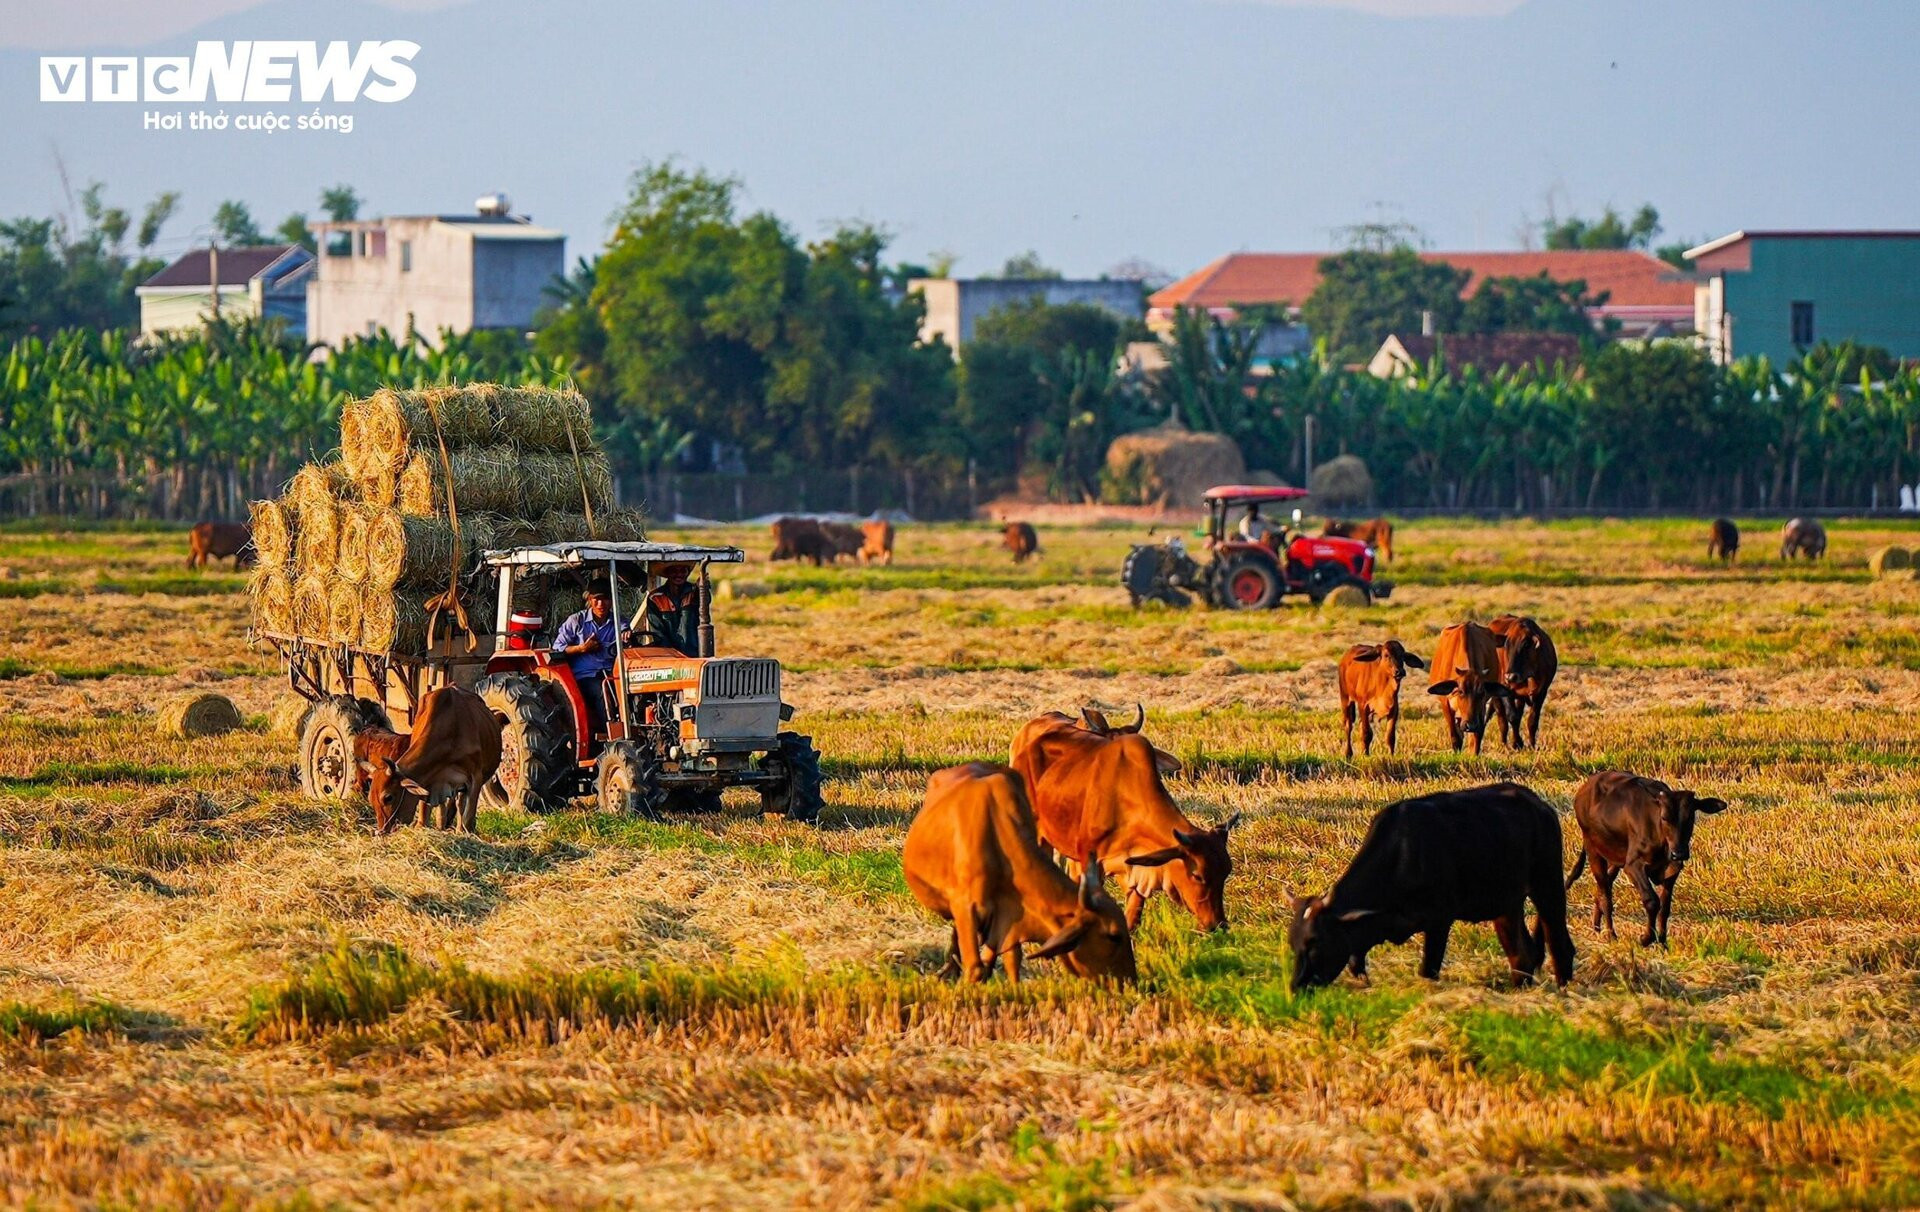 Ngắm 'mùa vàng' bình yên trên những cánh đồng lúa tại Bình Định - 13